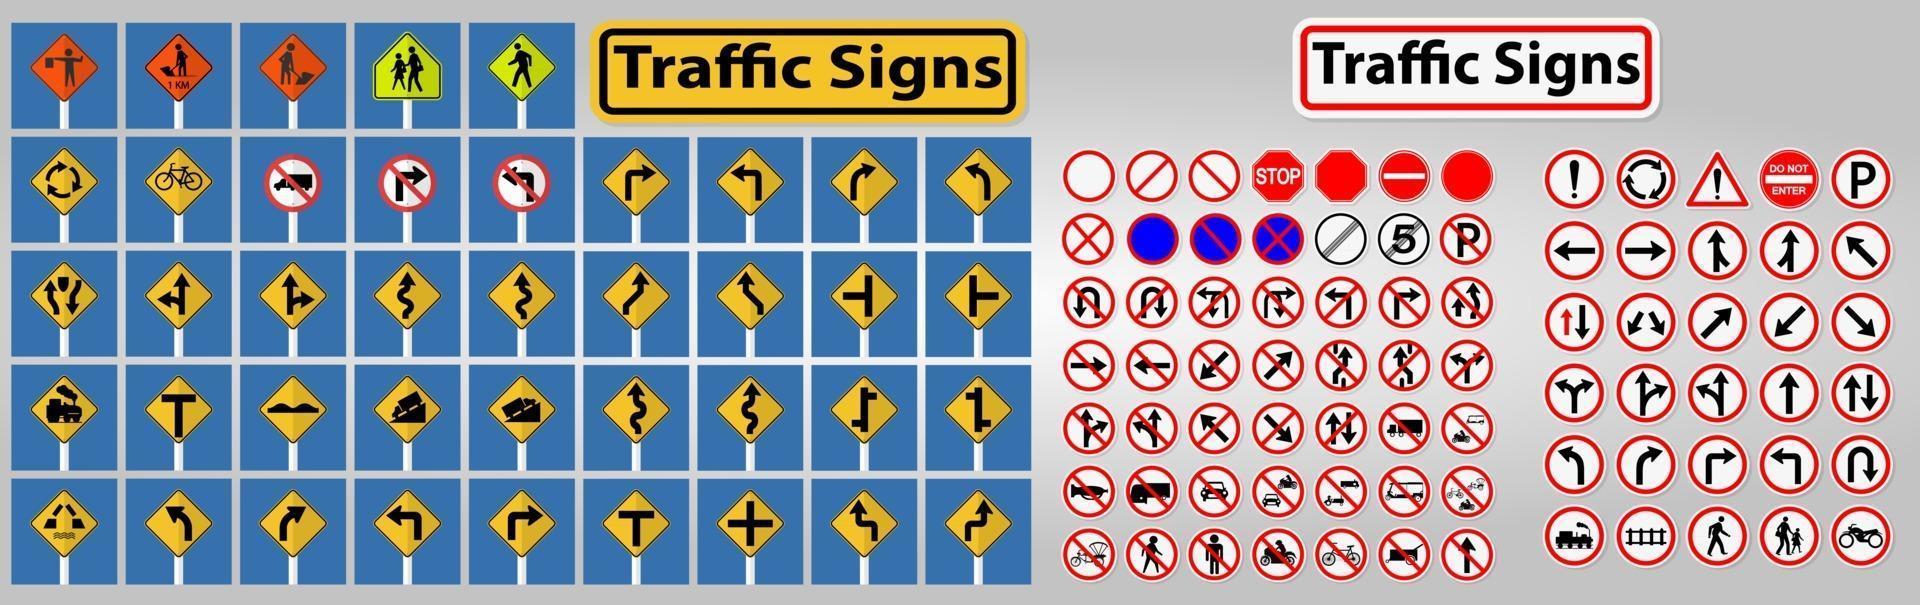 definir sinais de trânsito, proibição, sinal de símbolo do círculo vermelho de advertência isolado em fundo branco, ilustração vetorial vetor